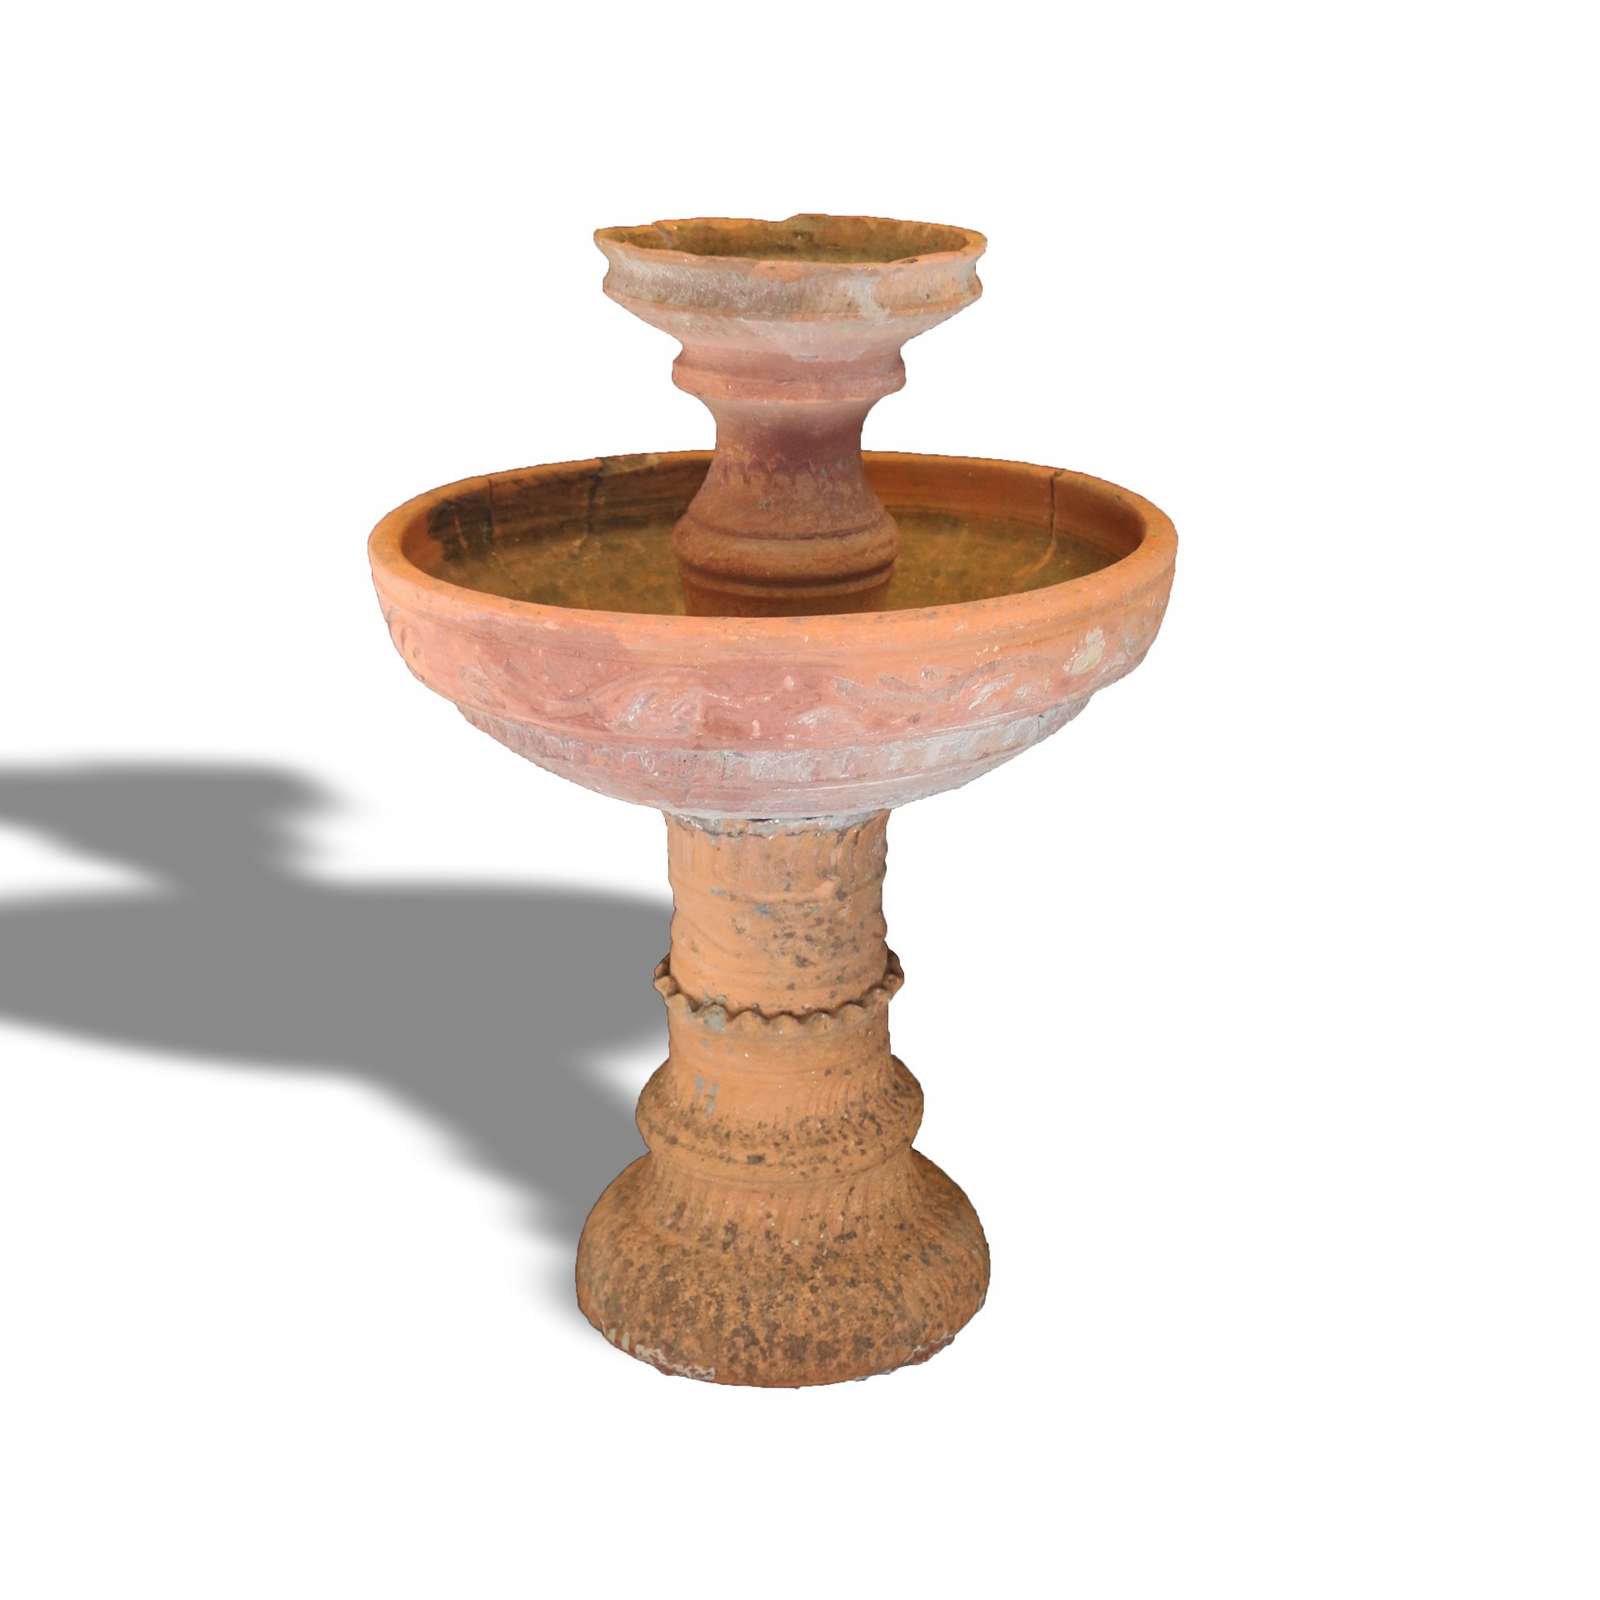 Antica fontanella in terracotta. Epoca 1800. - Fontane Antiche - Arredo Giardino - Prodotti - Antichità Fiorillo